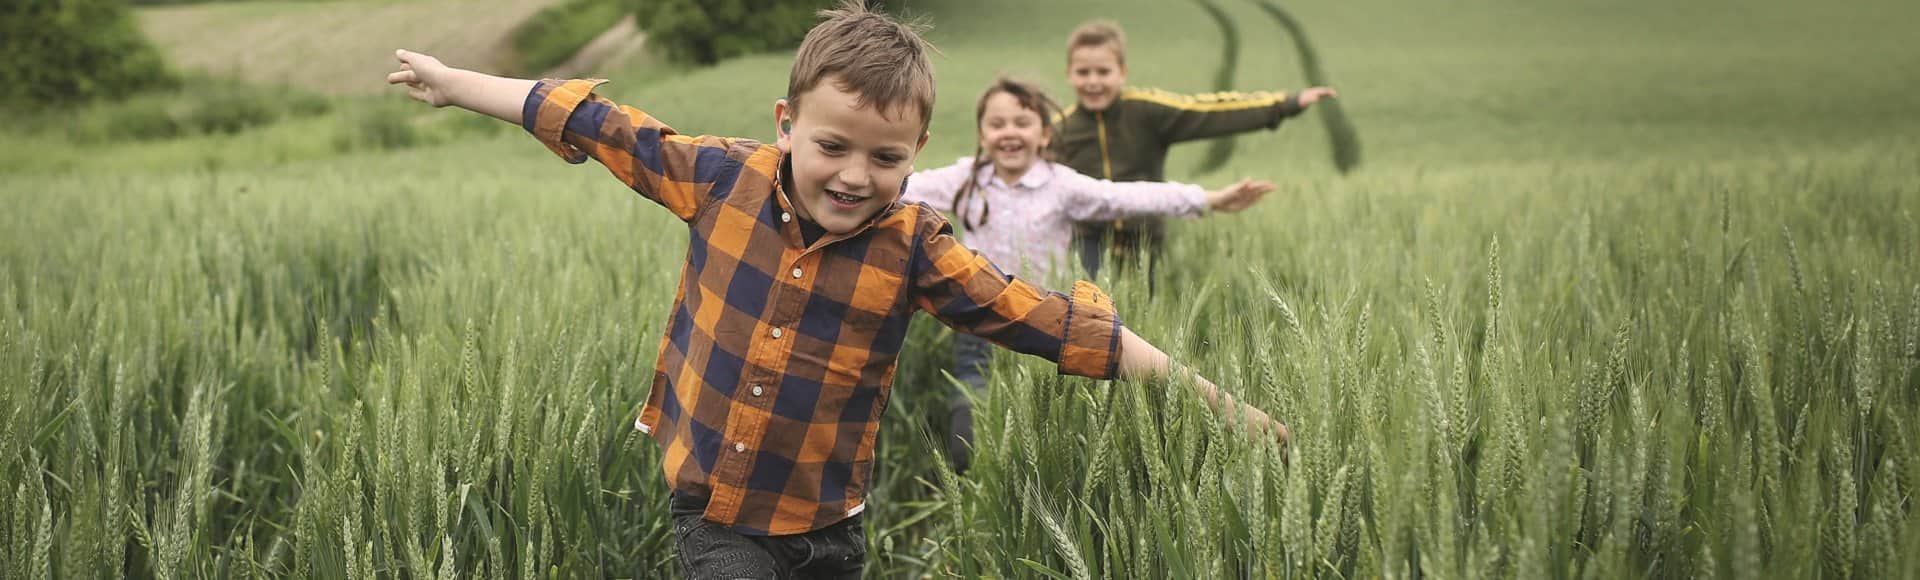 Trois enfants avec appareils auditifs jouant dans un champ